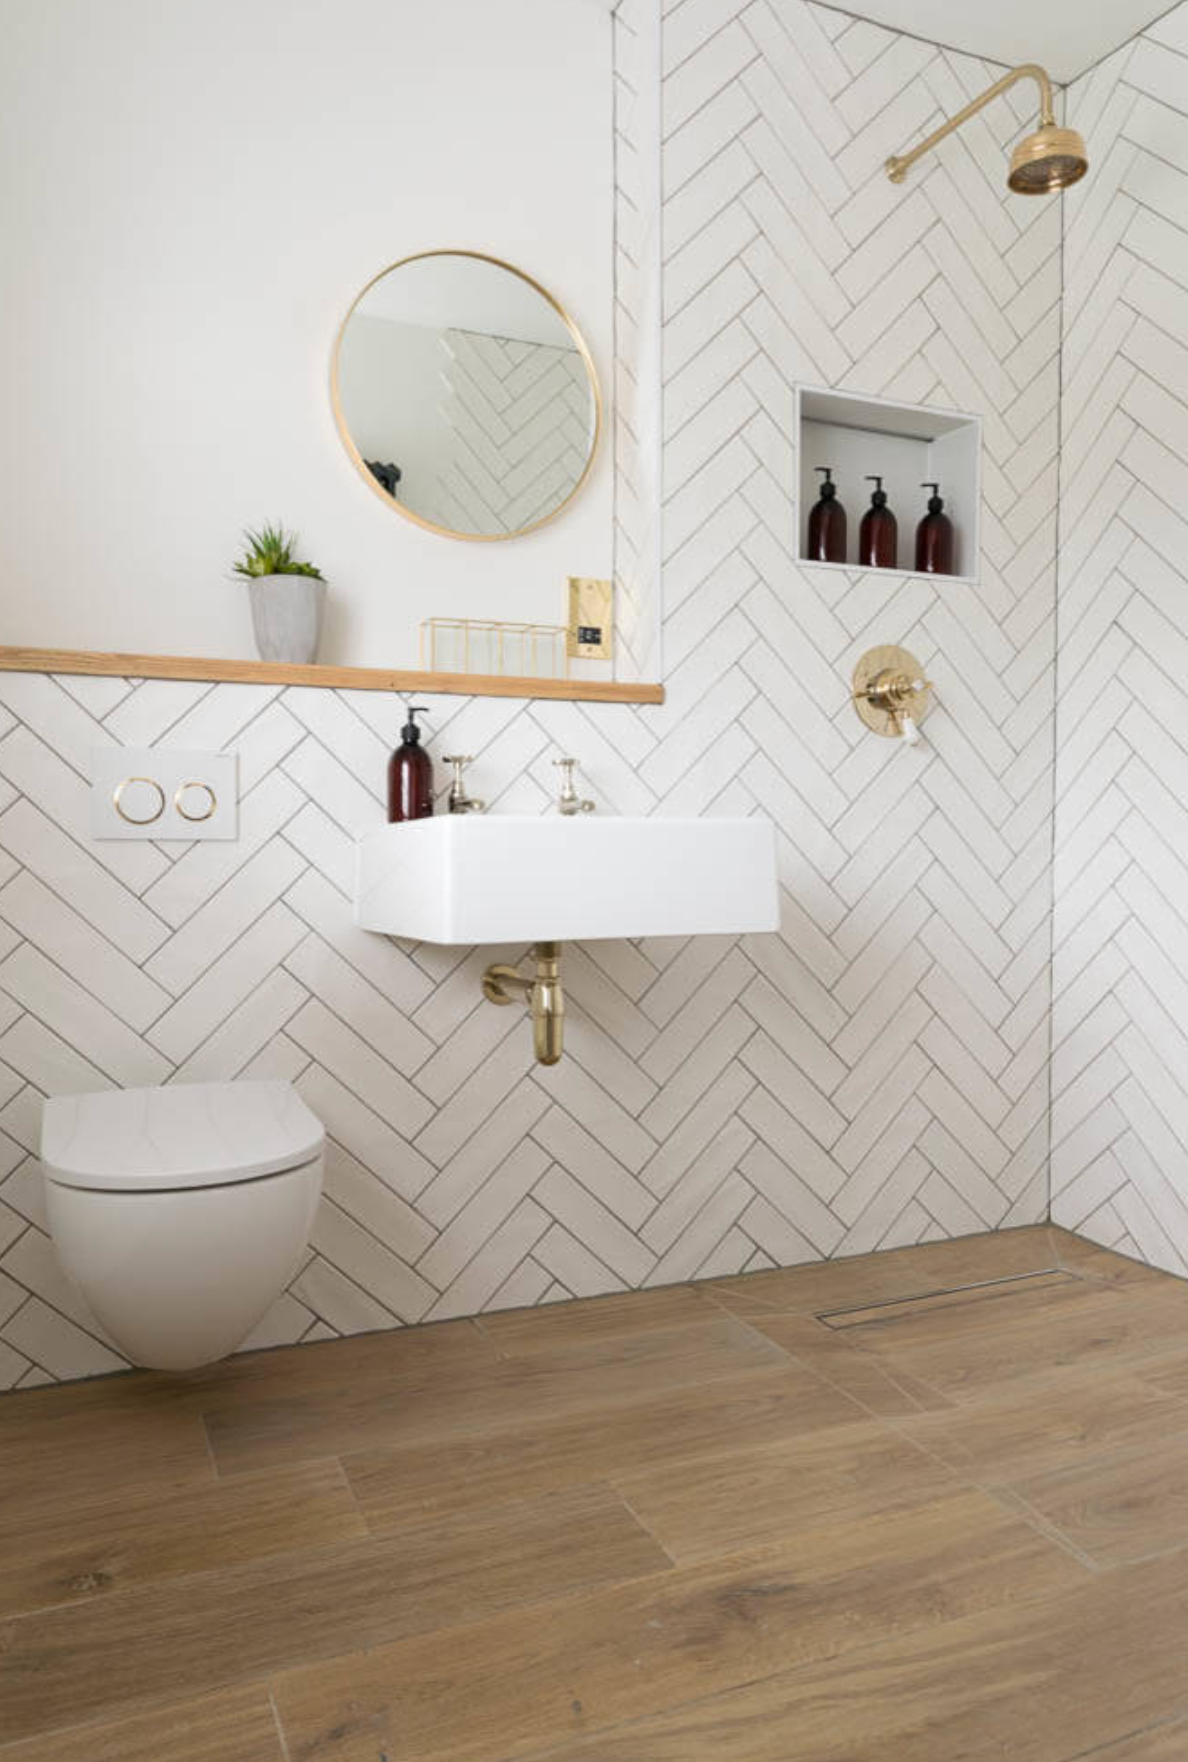 на фото зображено варіант інтер'єру ванної кімнати з частковим облицюванням керамічною плиткою стін